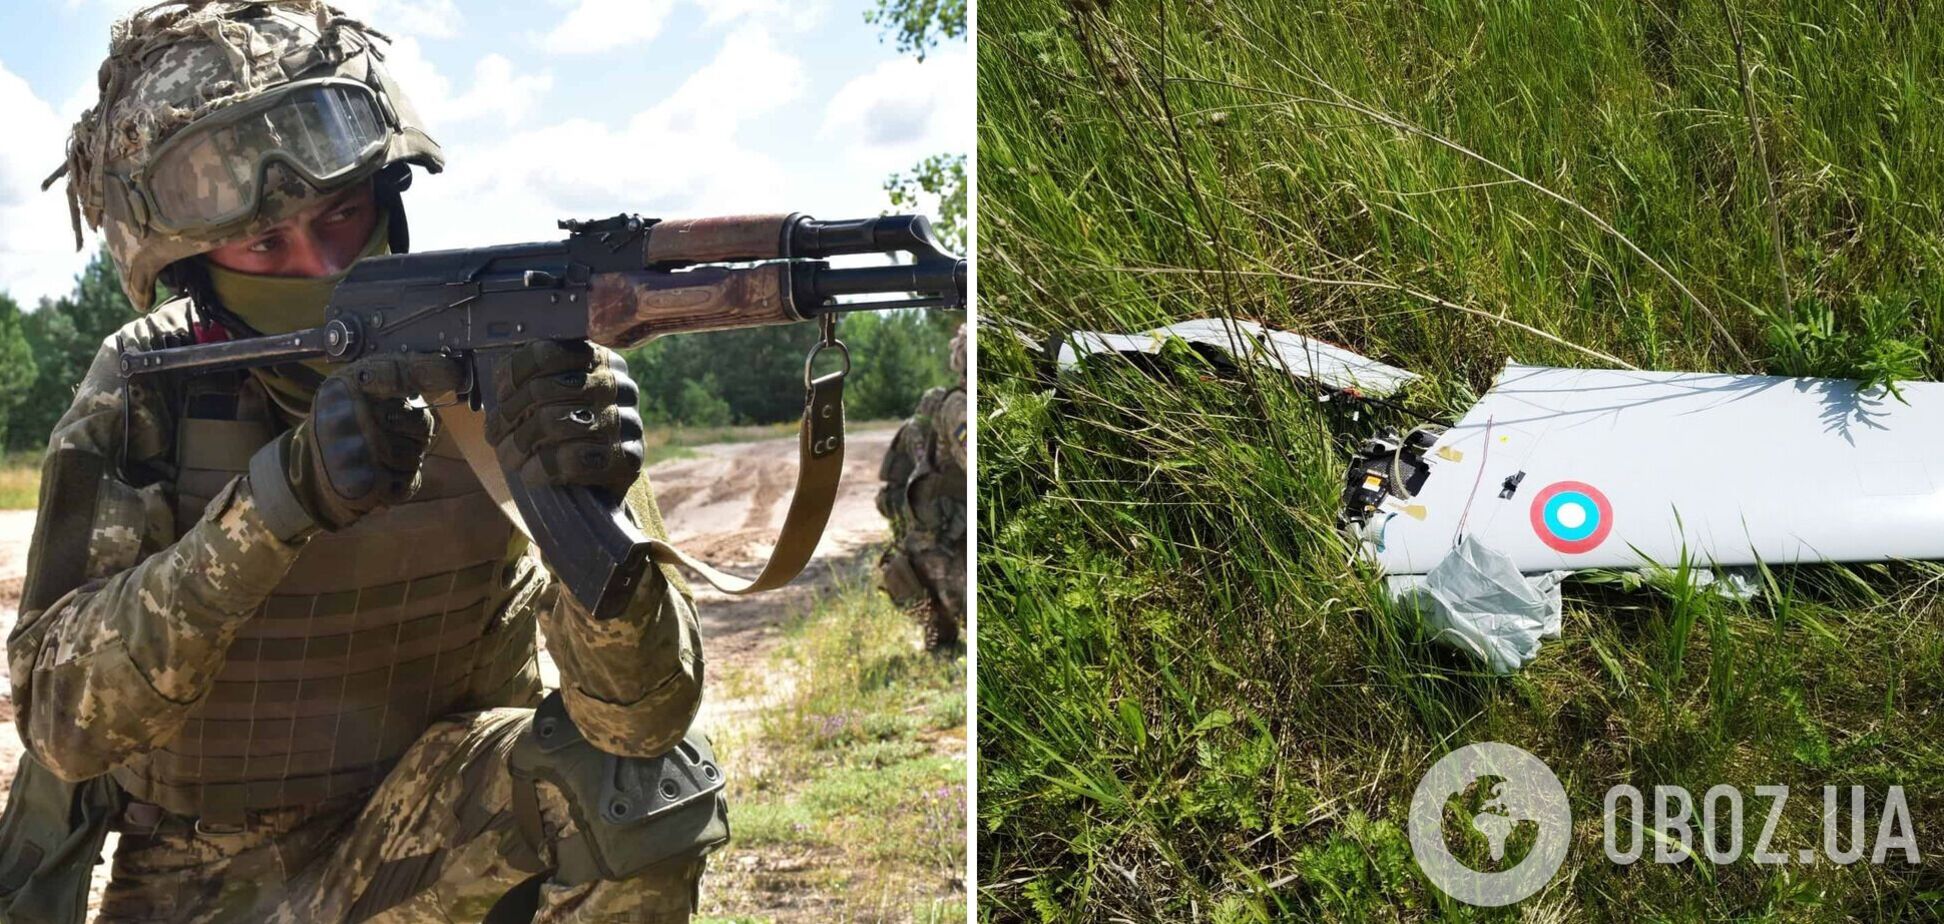 Бойцы ВСУ с помощью автомата Калашникова 'приземлили' вражеский БПЛА. Фото